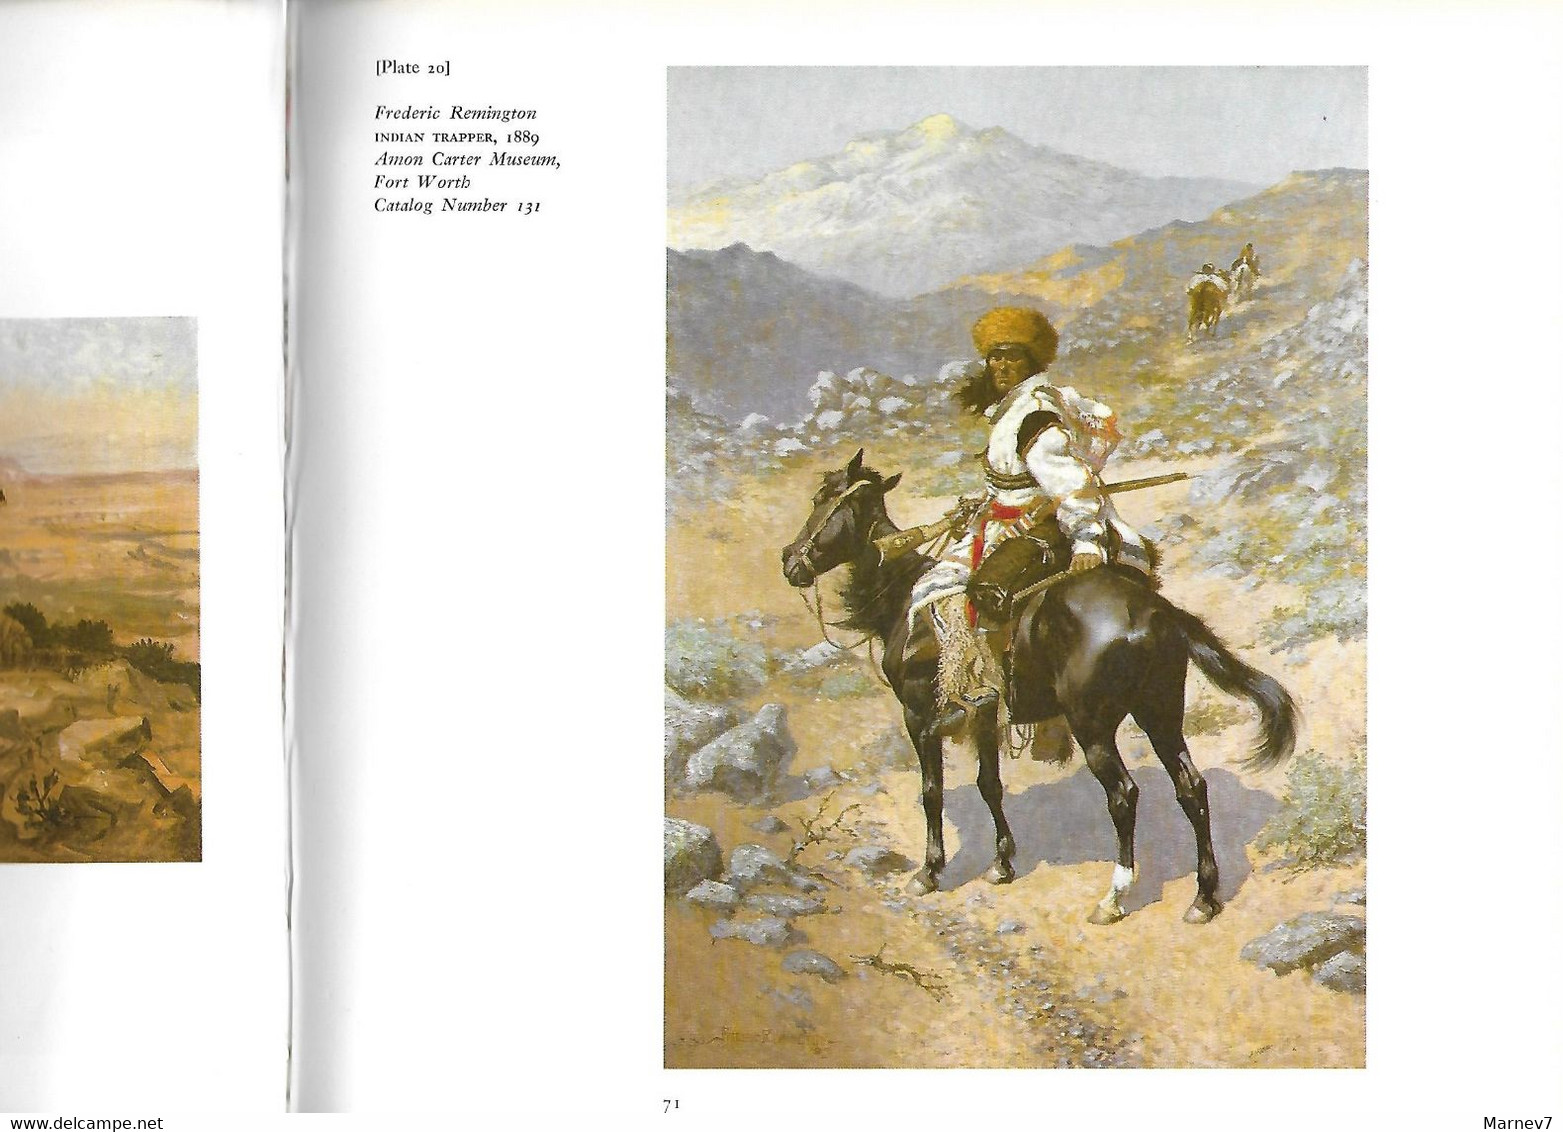 Livre En Anglais - The American West - L'Ouest Américain - Far West - USA - Peintres Catlin Remington Russel - - 1950-oggi